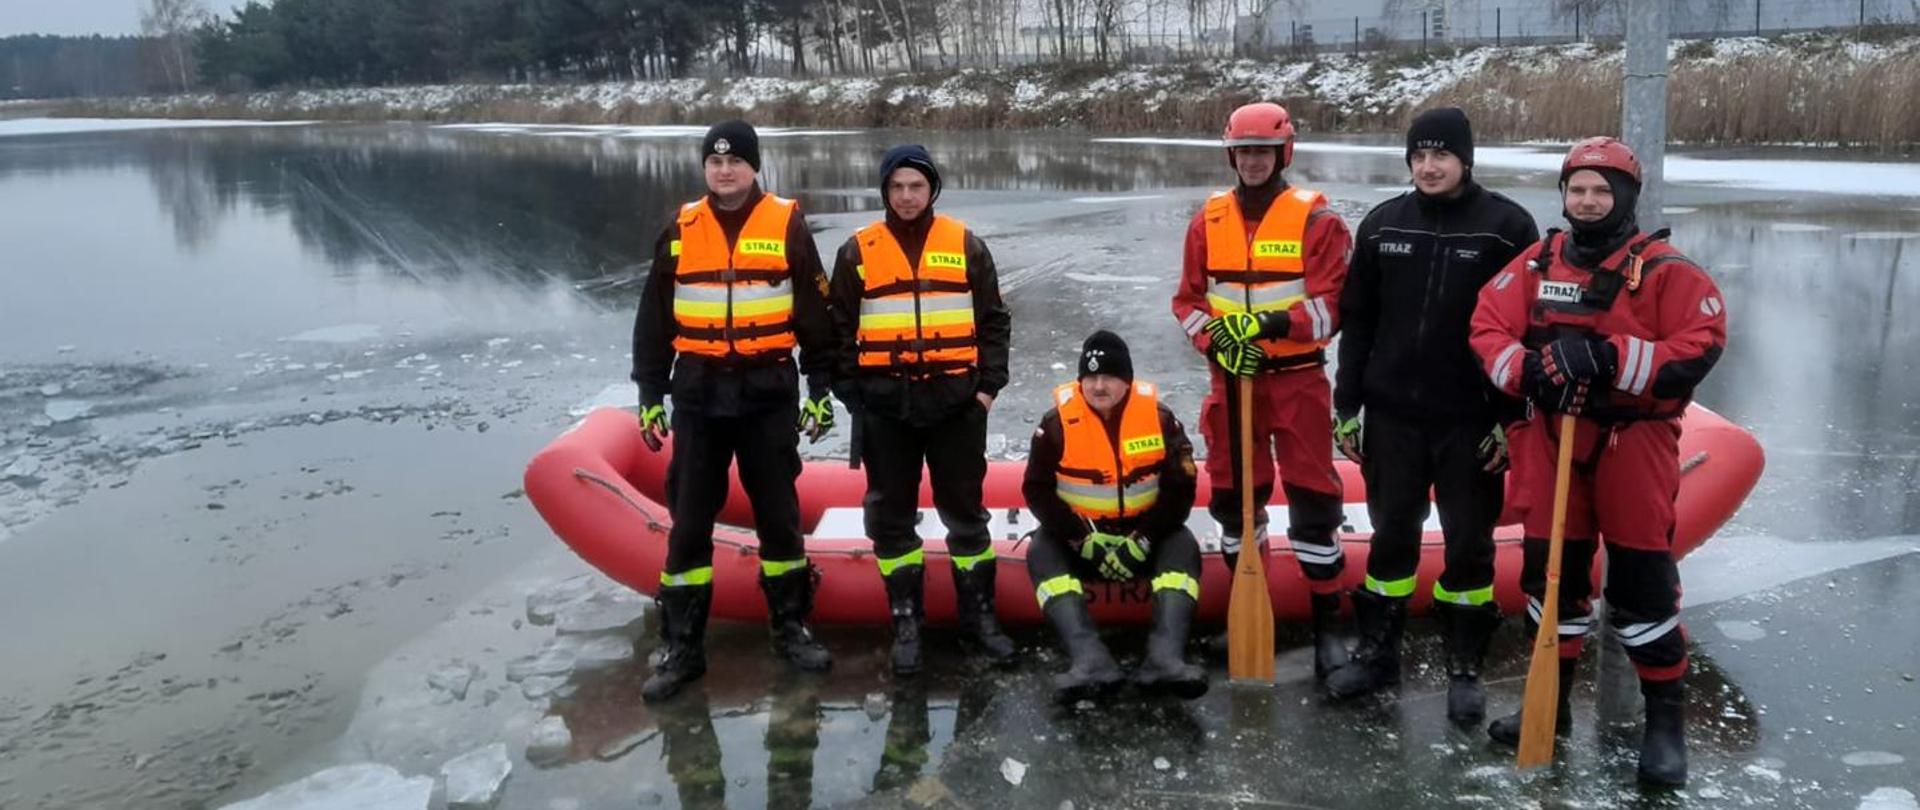 Komenda Powiatowa PSP w Nowej Soli zorganizowała na zbiorniku wodnym, w dniach 17 – 18 grudnia br. ćwiczenia z ratownictwa wodnego i lodowego dla strażaków – ratowników Ochotniczych Straży Pożarnych z terenu powiatu nowosolskiego. 